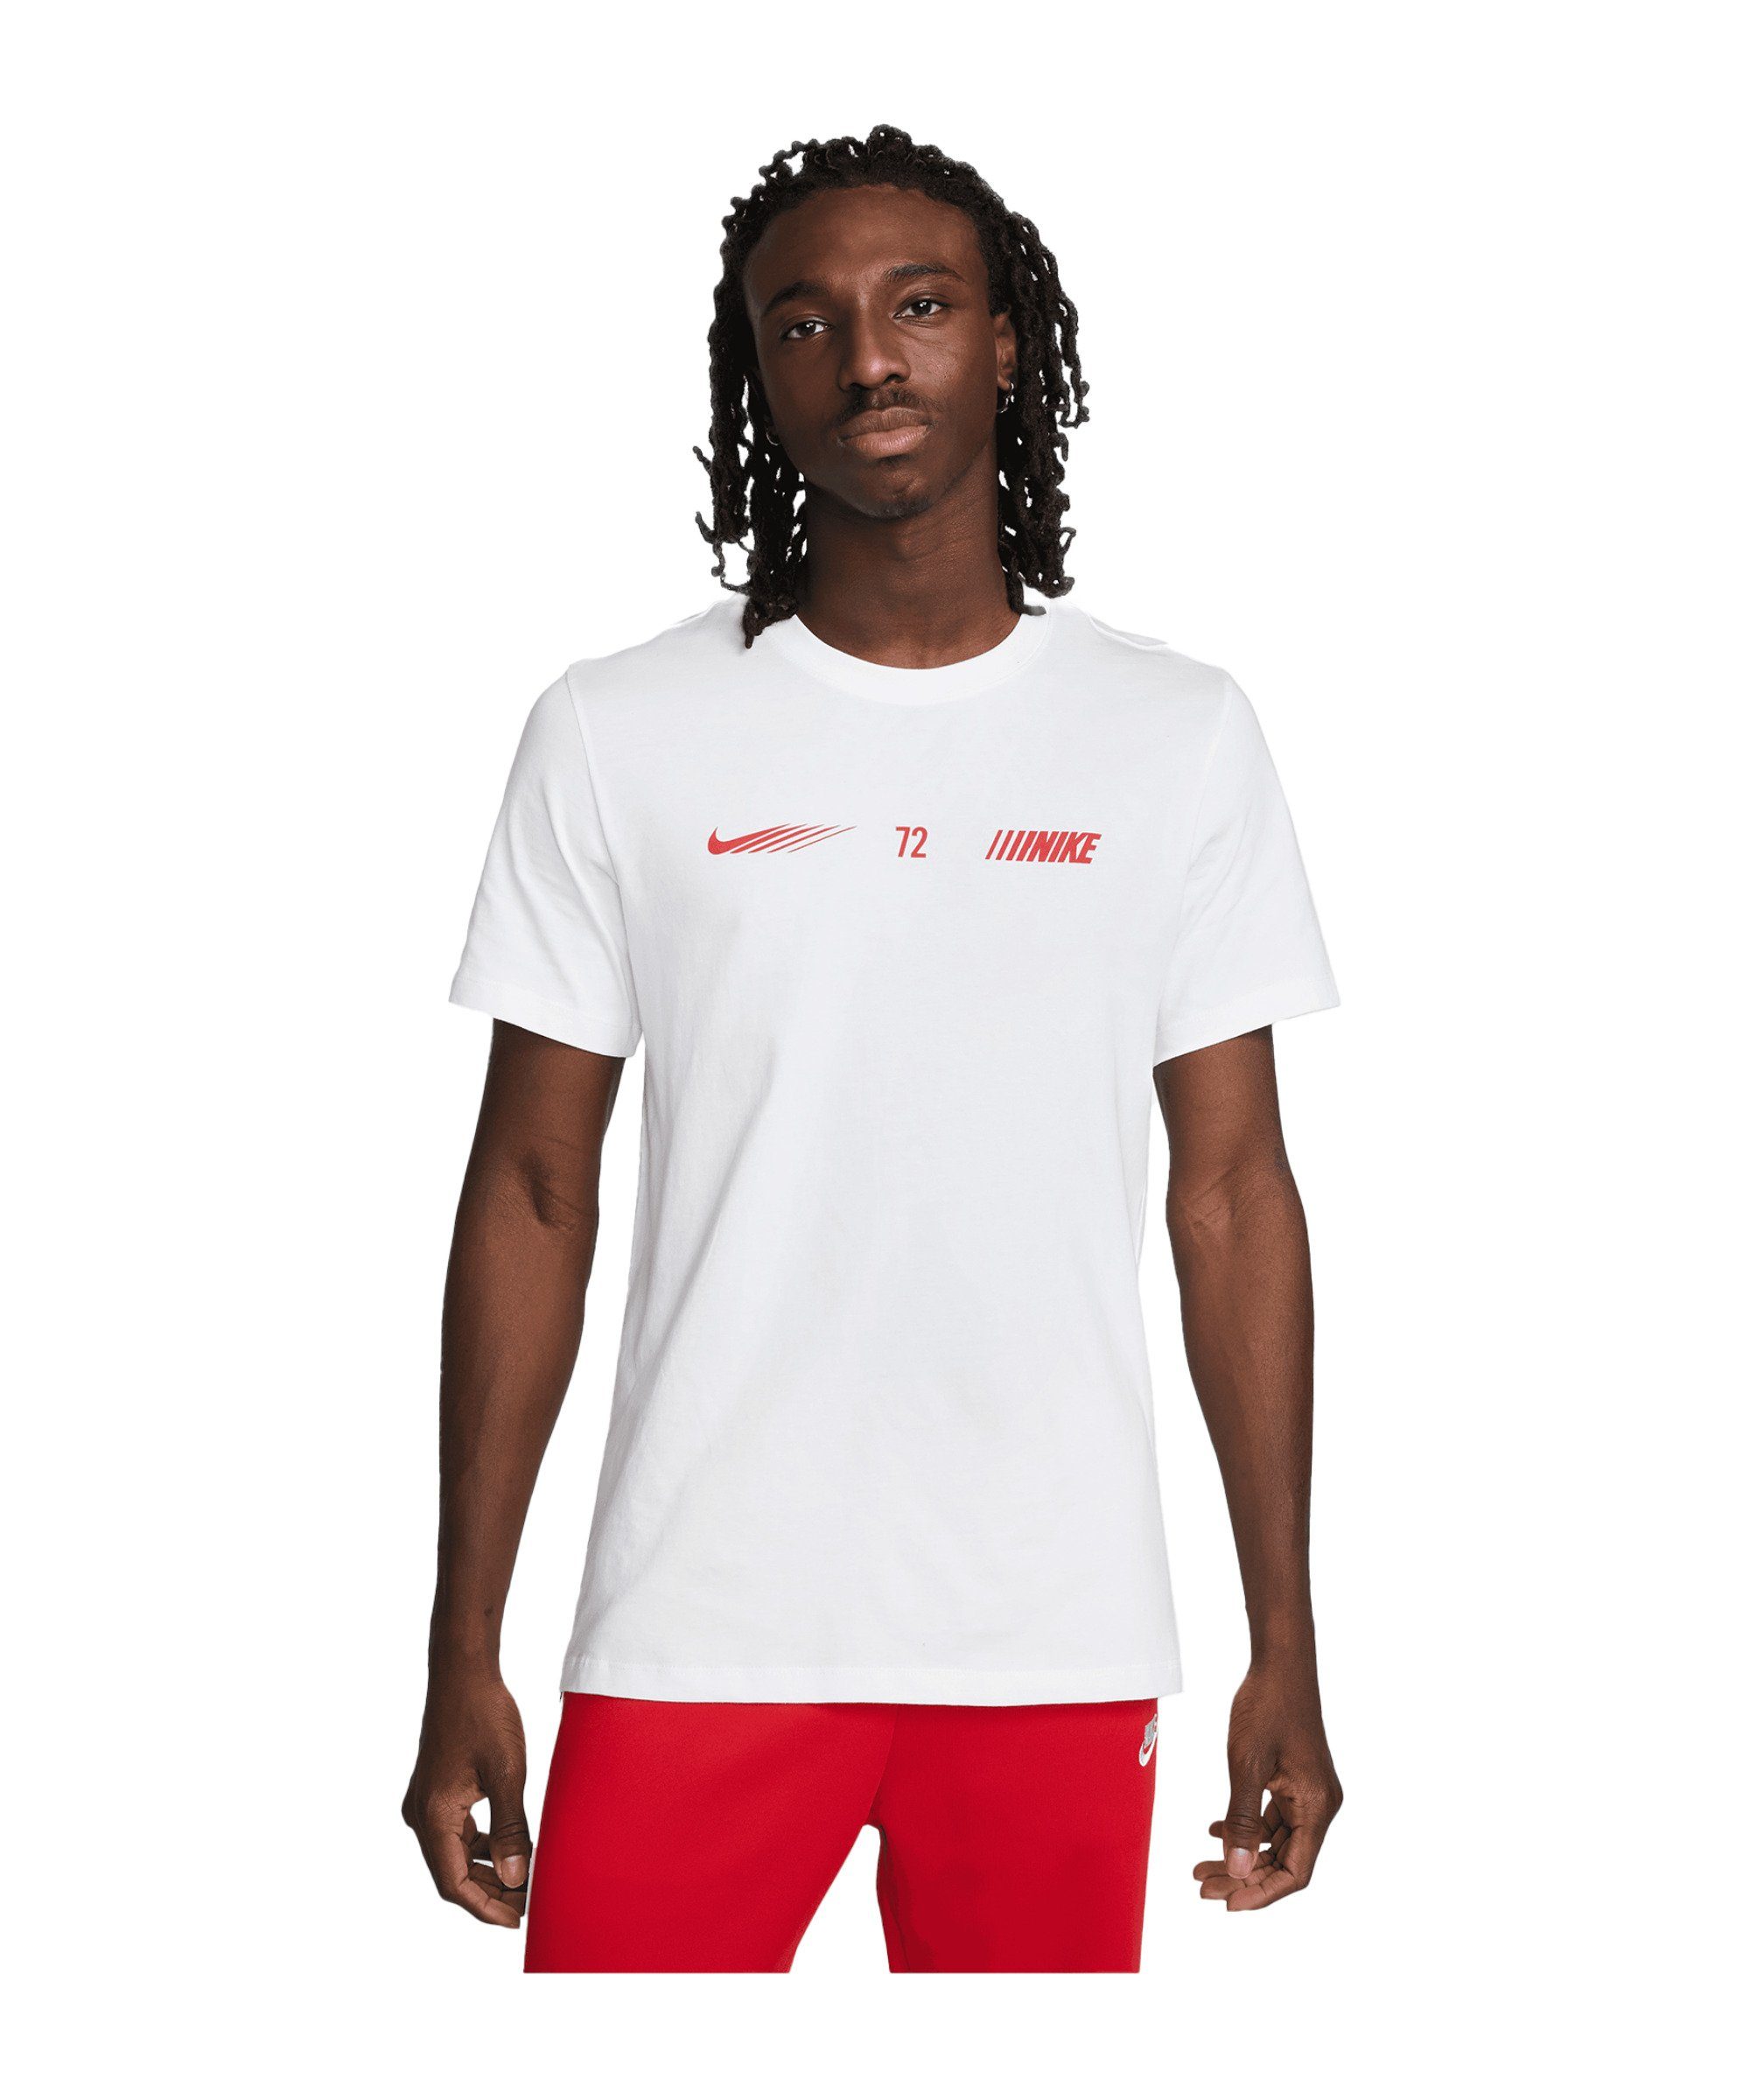 Nike Sportswear weiss default Standart T-Shirt T-Shirt Issue